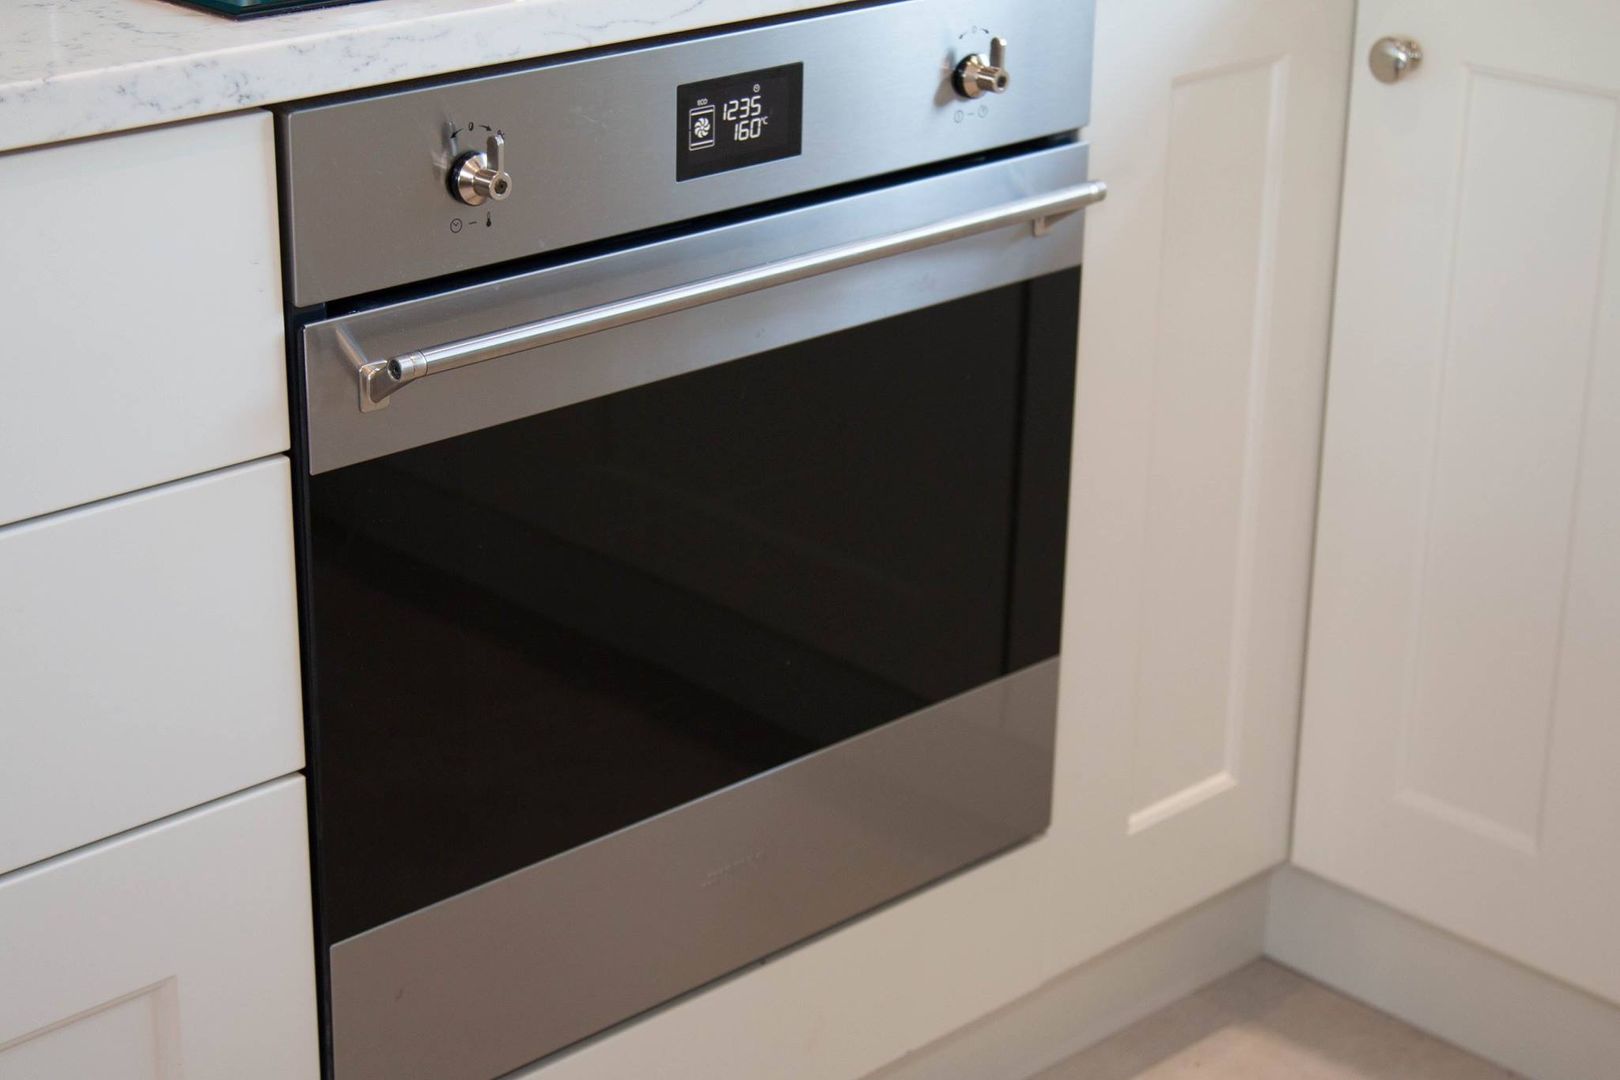 SMEG Classic Appliances homify Kitchen Iron/Steel smeg,oven,appliances,kitchen,stainless steel,classic,traditional